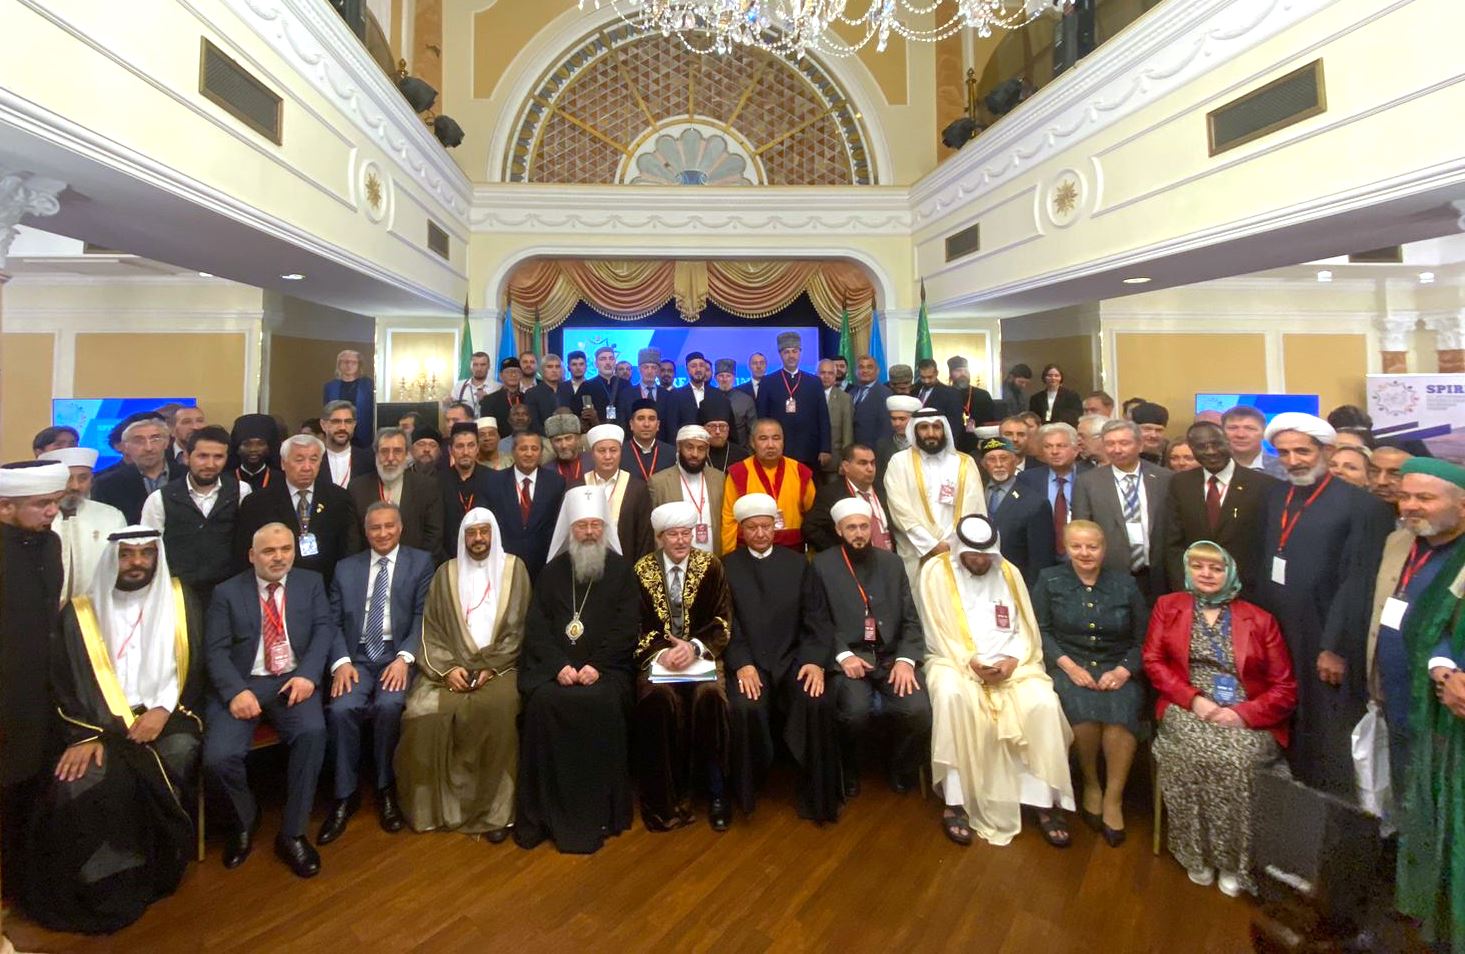 II-ой Петербургский международный религиозный форум завершил свою работу